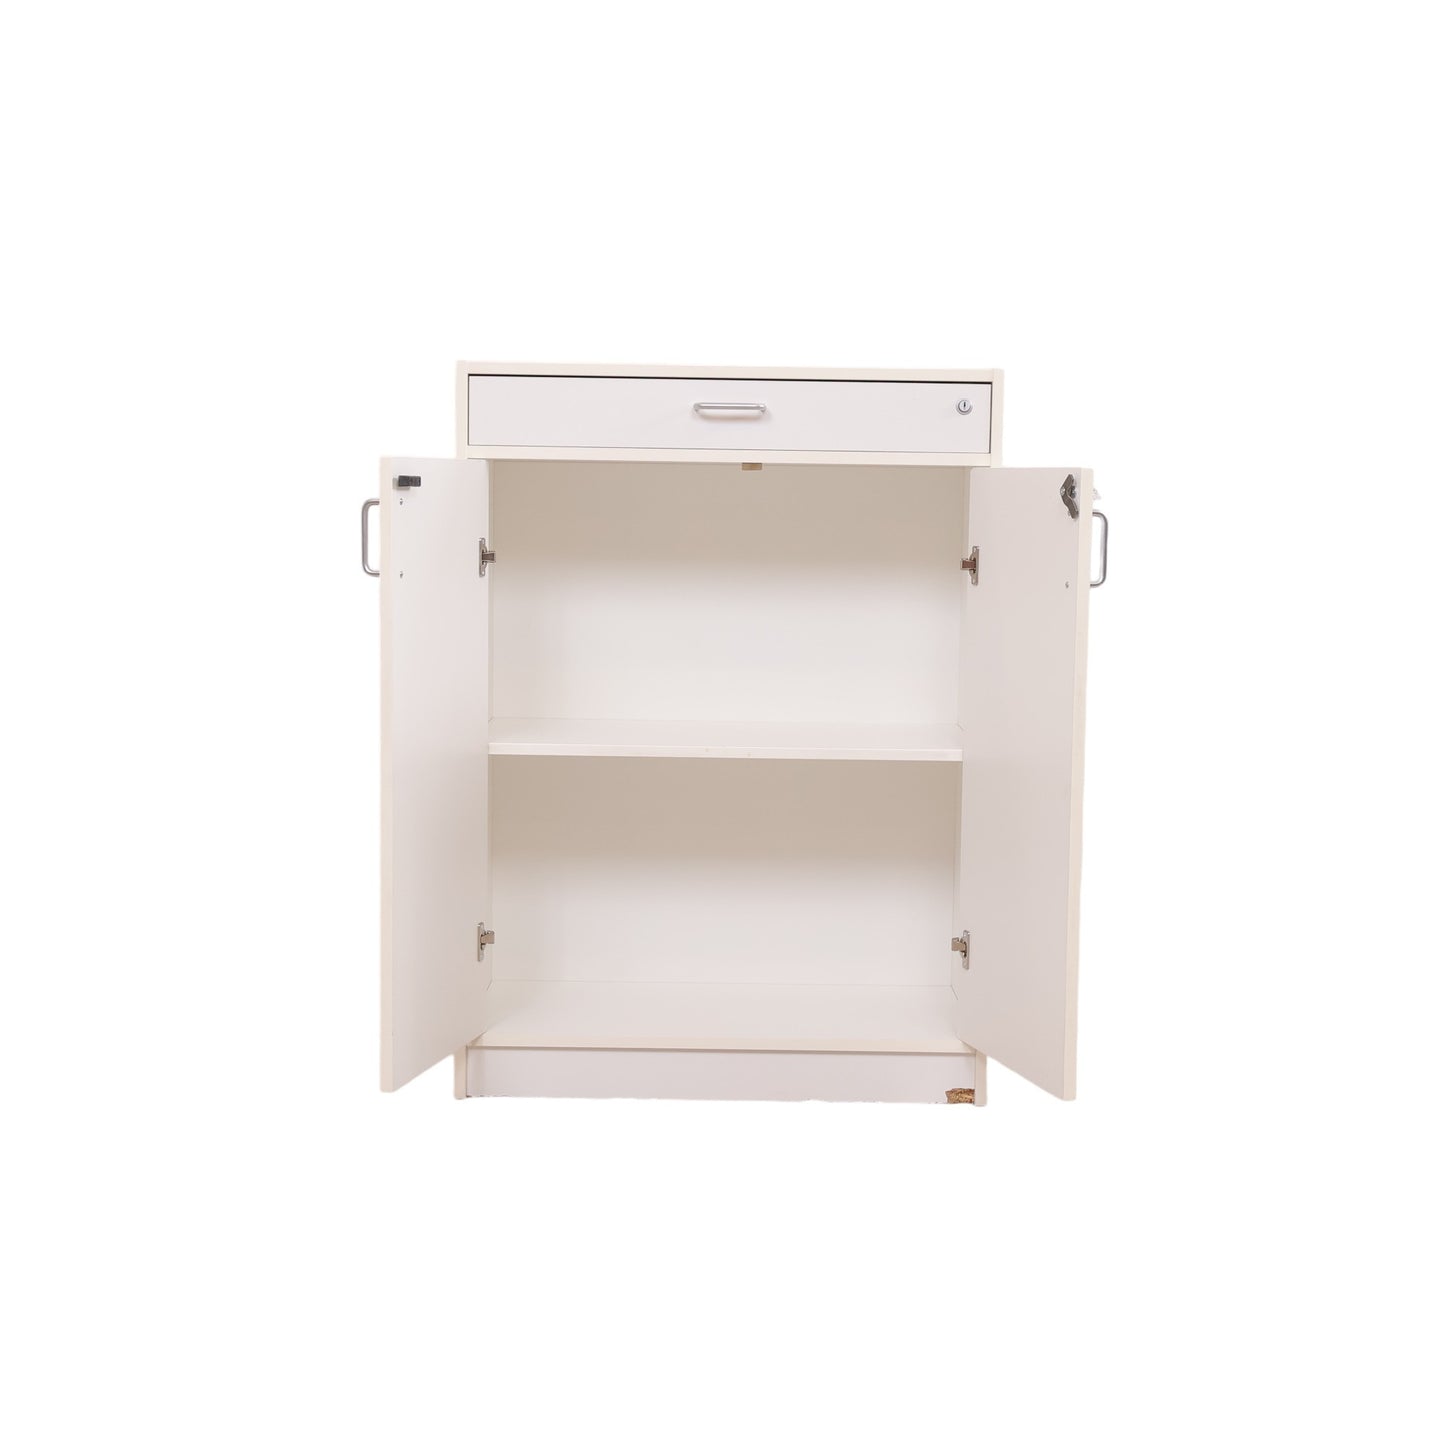 Kvalitetssikret | 110x80 cm, Hvitt skap med to stk skapdører og god lagringsplass